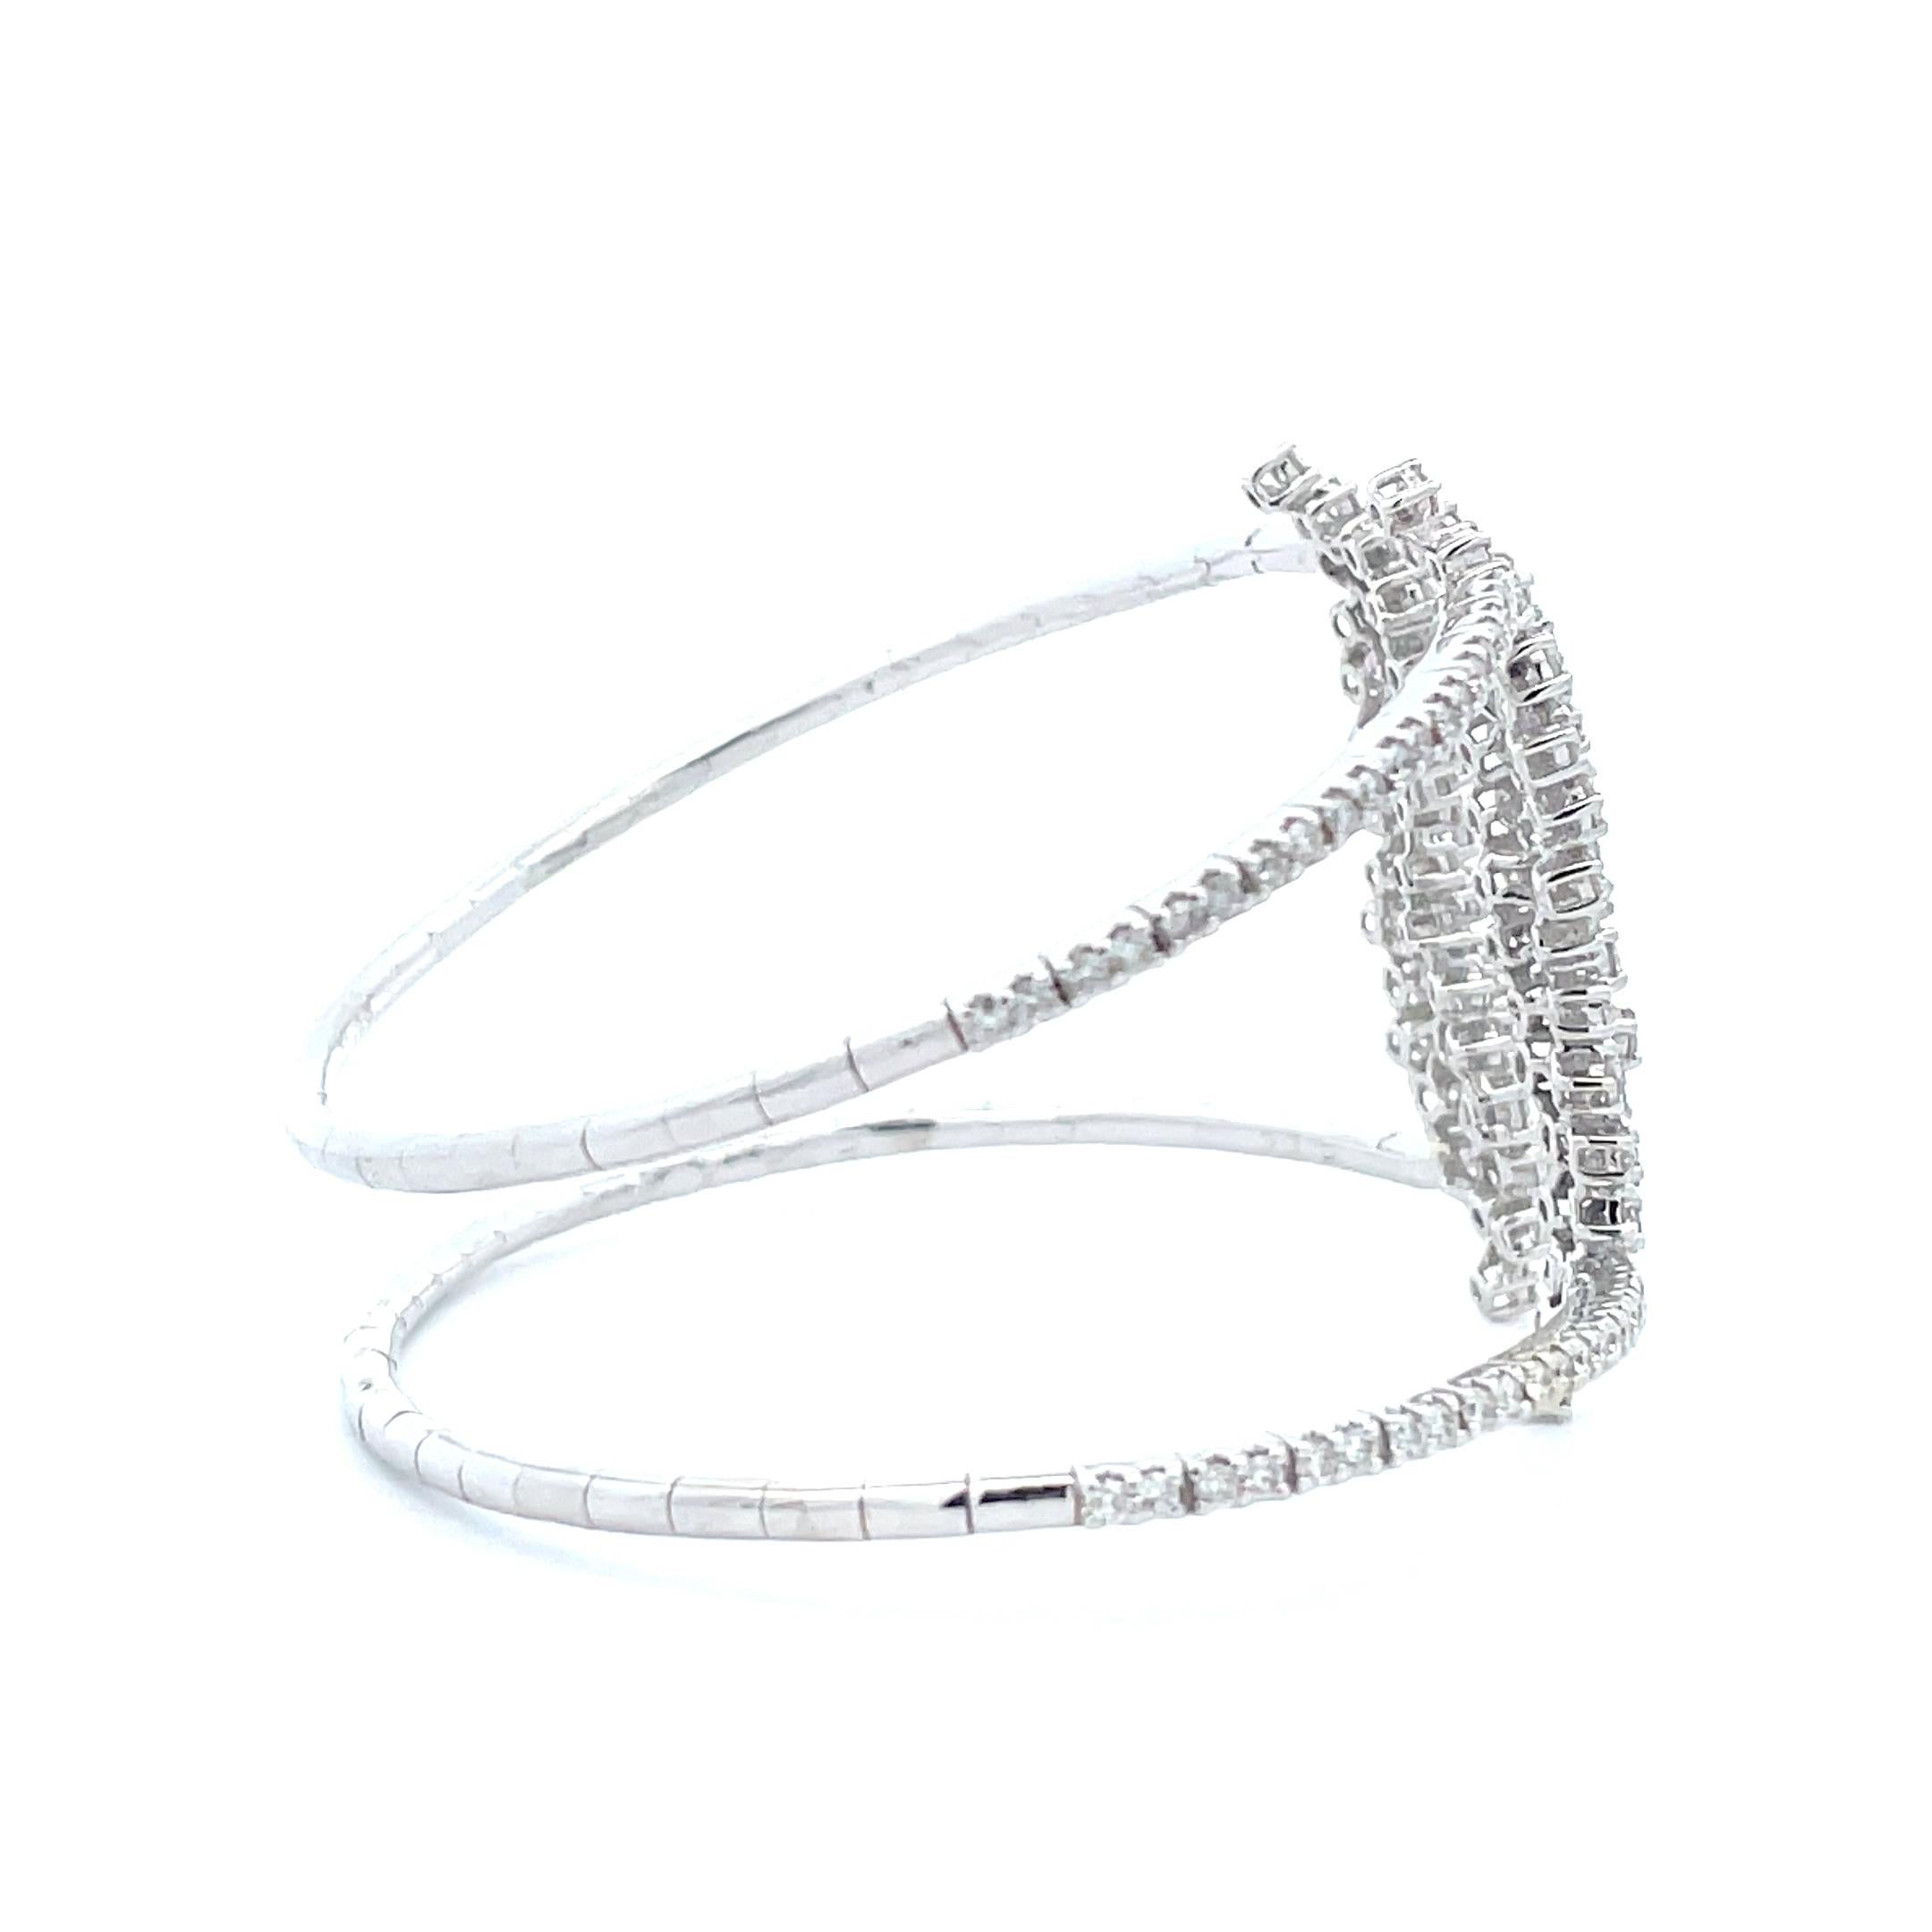 Découvrez l'éclat du diamant de 3,27 ct. Bracelet manchette à double bande avec diamants. Un savoir-faire exquis, une qualité inégalée et un design classique qui respire le luxe raffiné sont les caractéristiques de cette conception exquise. Le